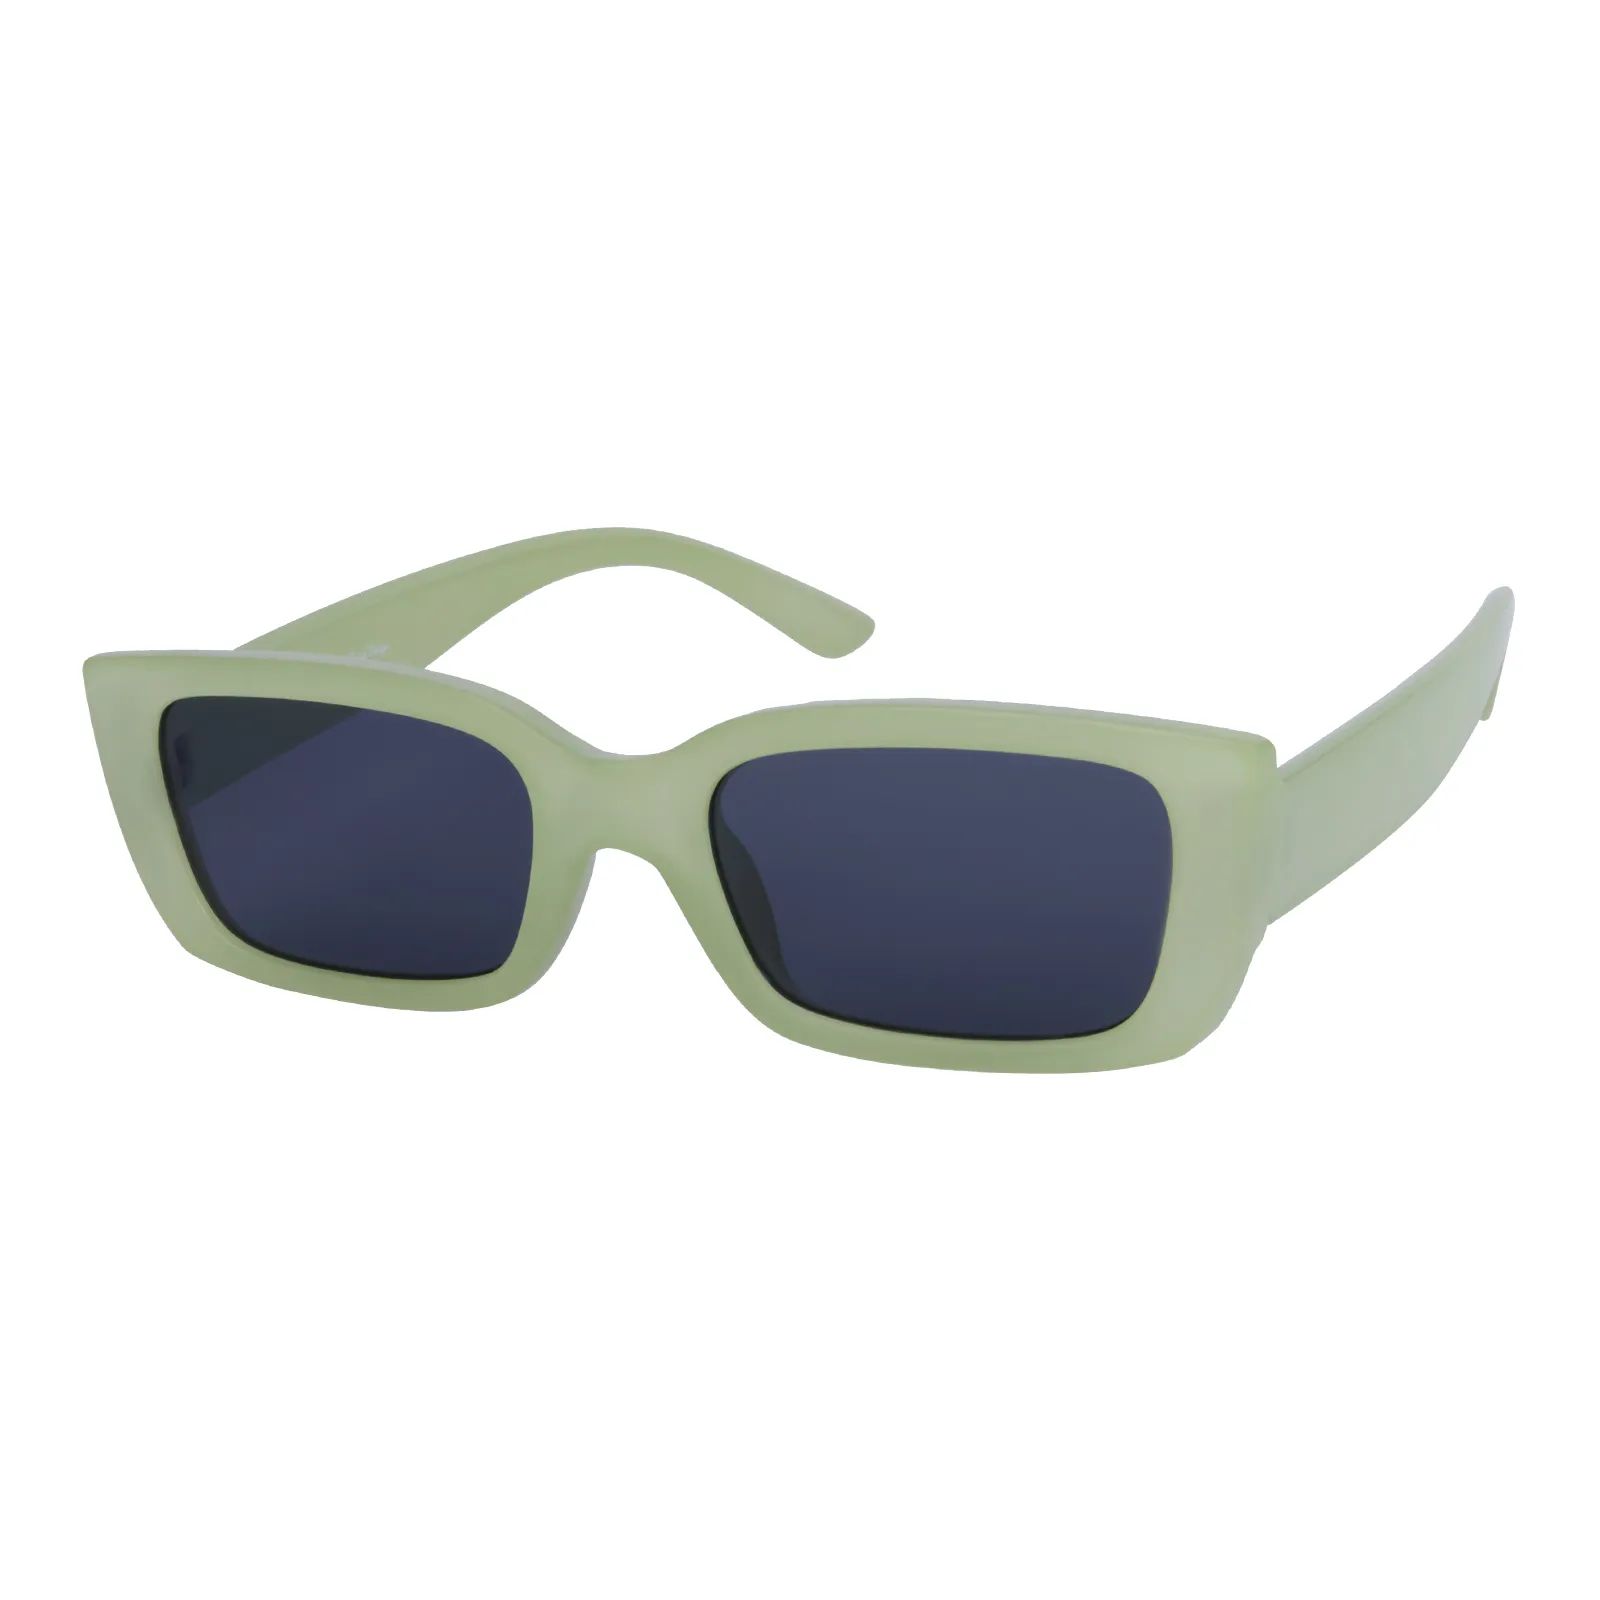 Suzanne - Square Bright Jelly Green Sunglasses for Women